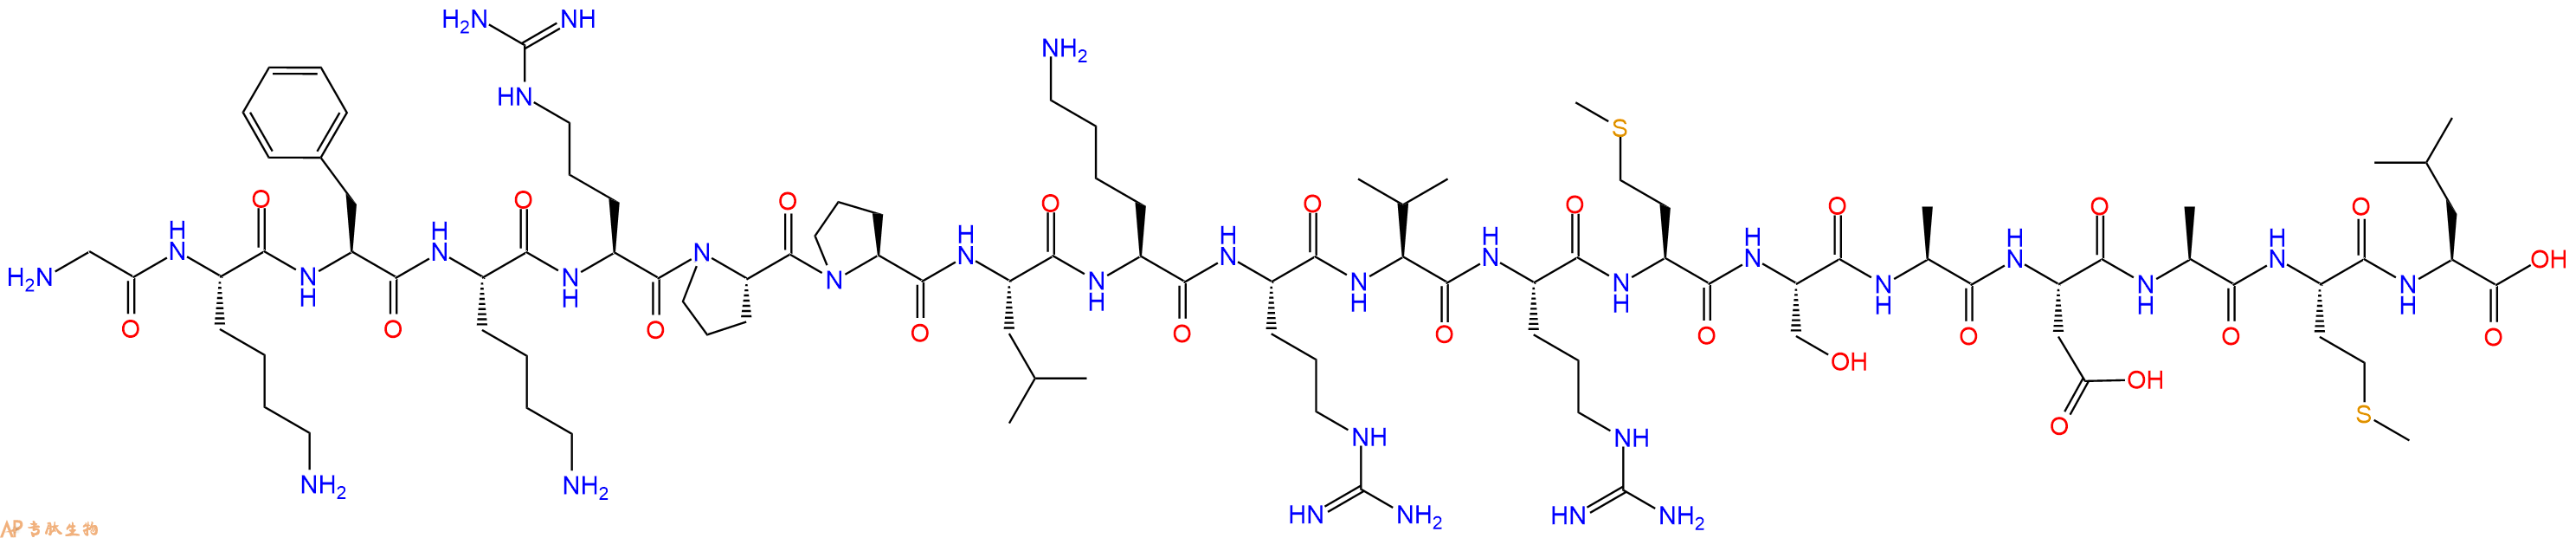 专肽生物产品十九肽GKFKRPPLKRVRMSADAML